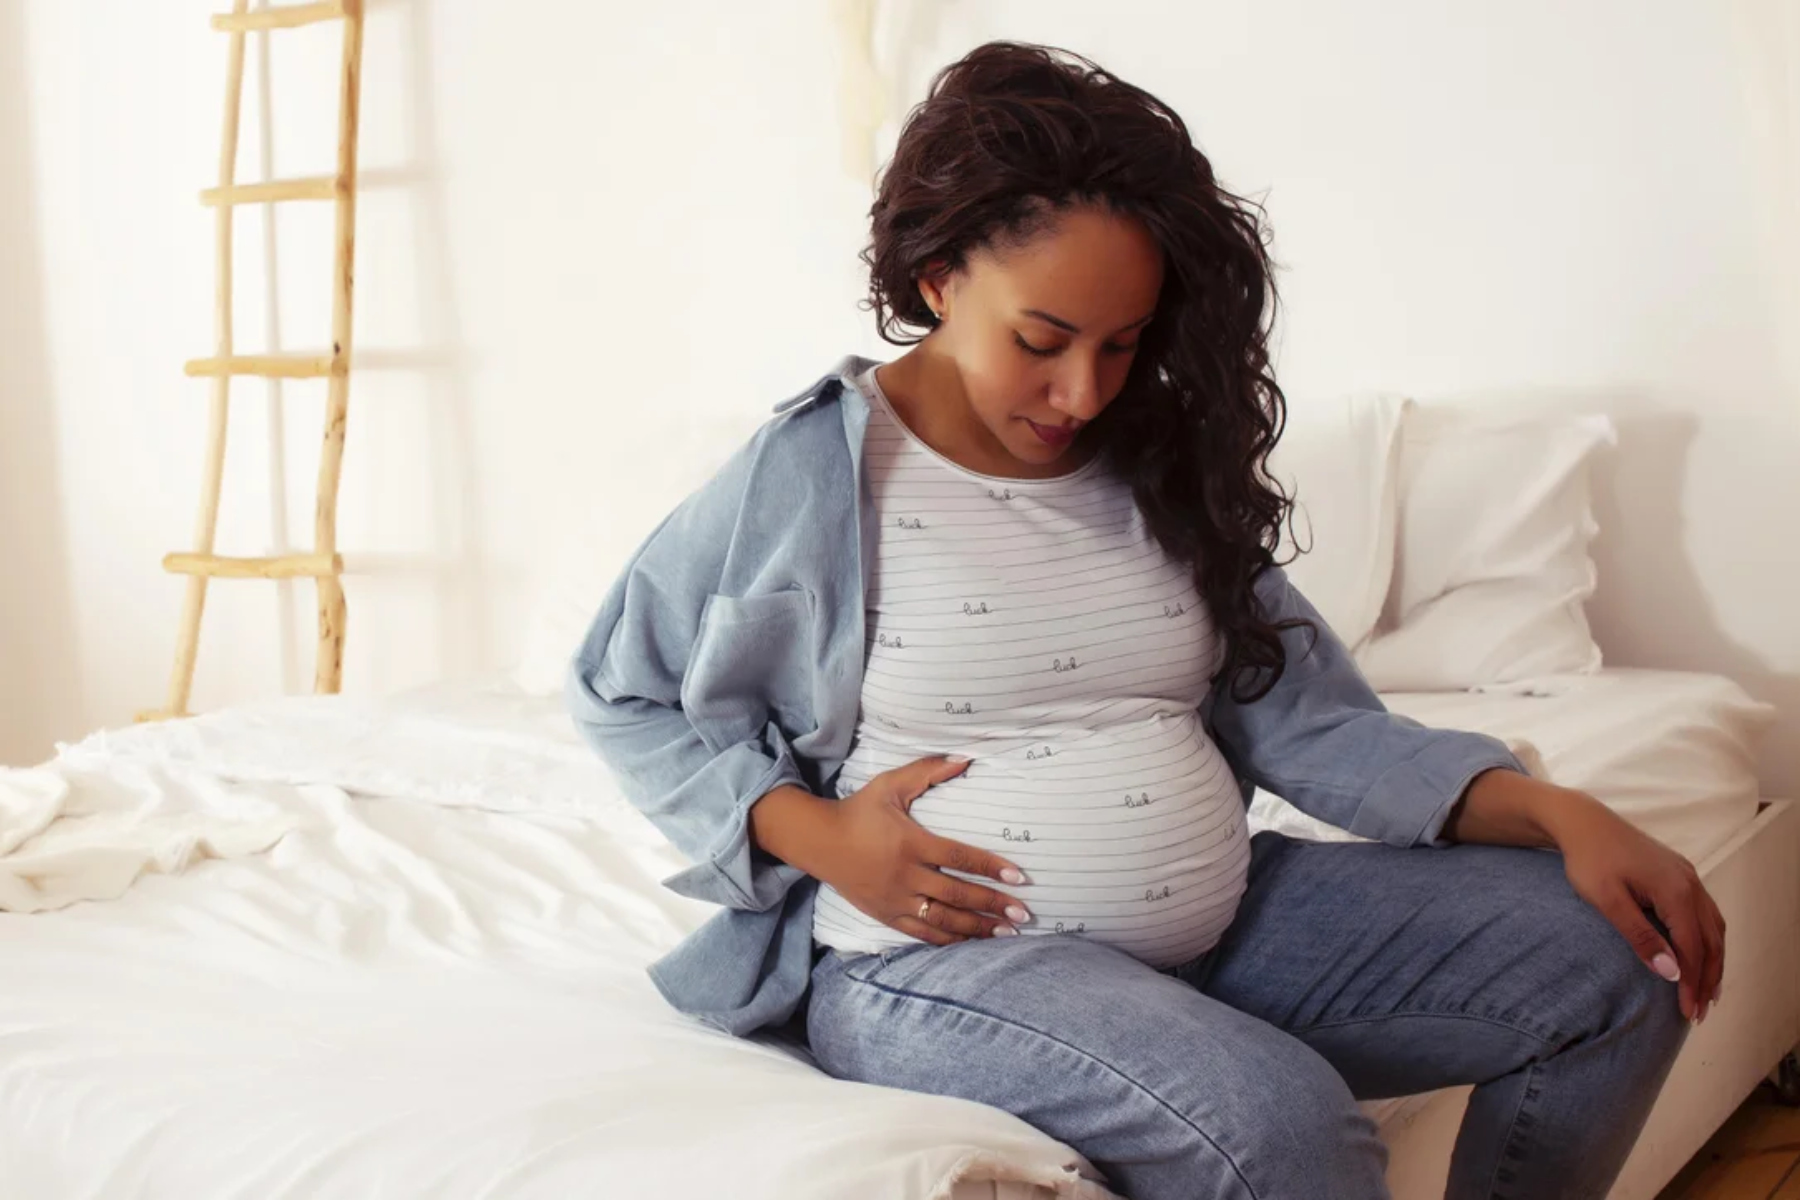 Εγκυμοσύνη: Η προεκλαμψία στην εγκυμοσύνη θέτει τις έγχρωμες γυναίκες σε υψηλότερο κίνδυνο για εγκεφαλικό